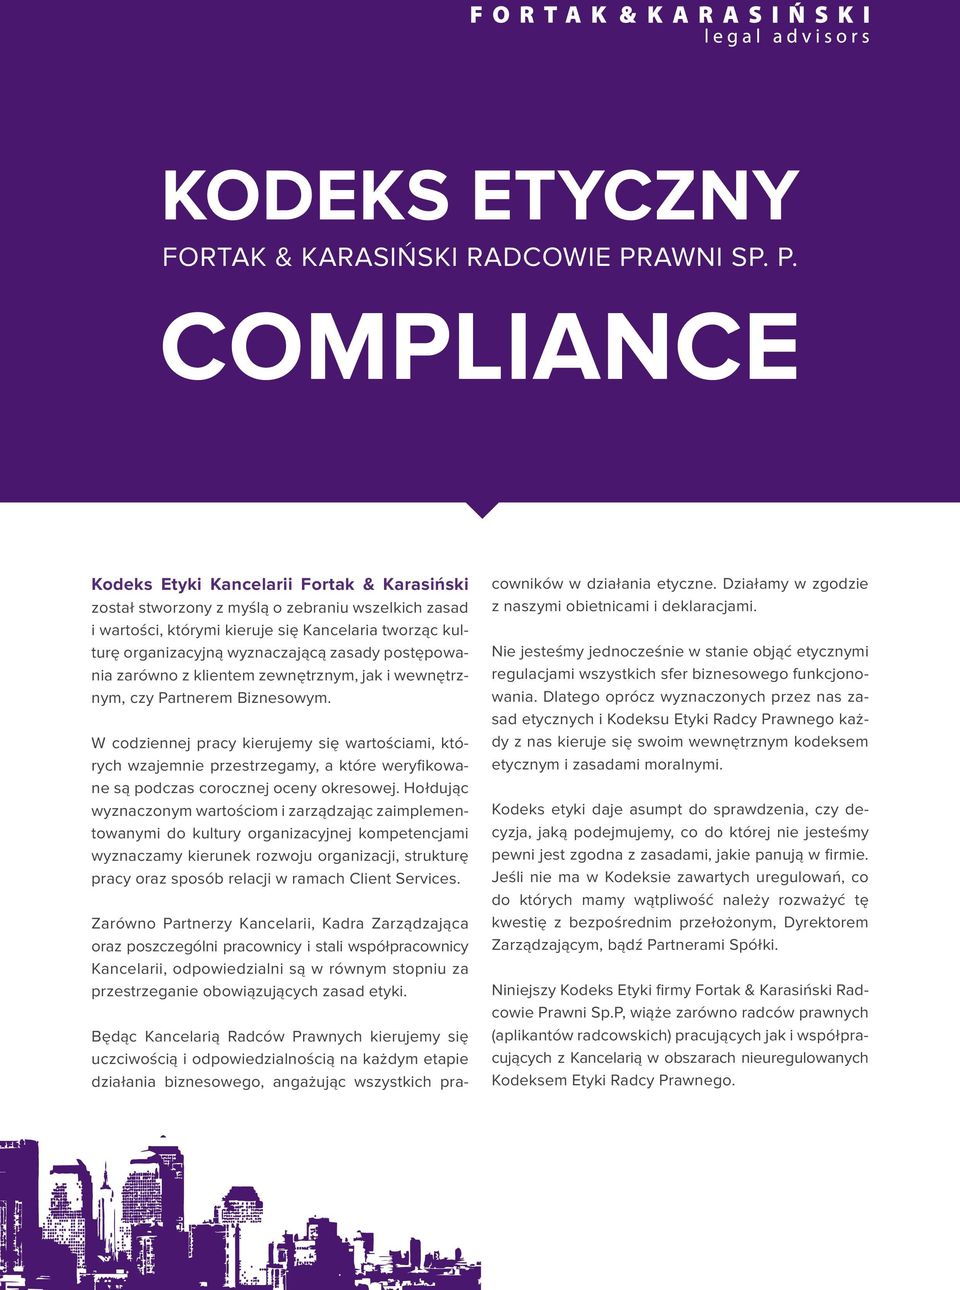 COMPLIANCE Kodeks Etyki Kancelarii Fortak & Karasiński został stworzony z myślą o zebraniu wszelkich zasad i wartości, którymi kieruje się Kancelaria tworząc kulturę organizacyjną wyznaczającą zasady